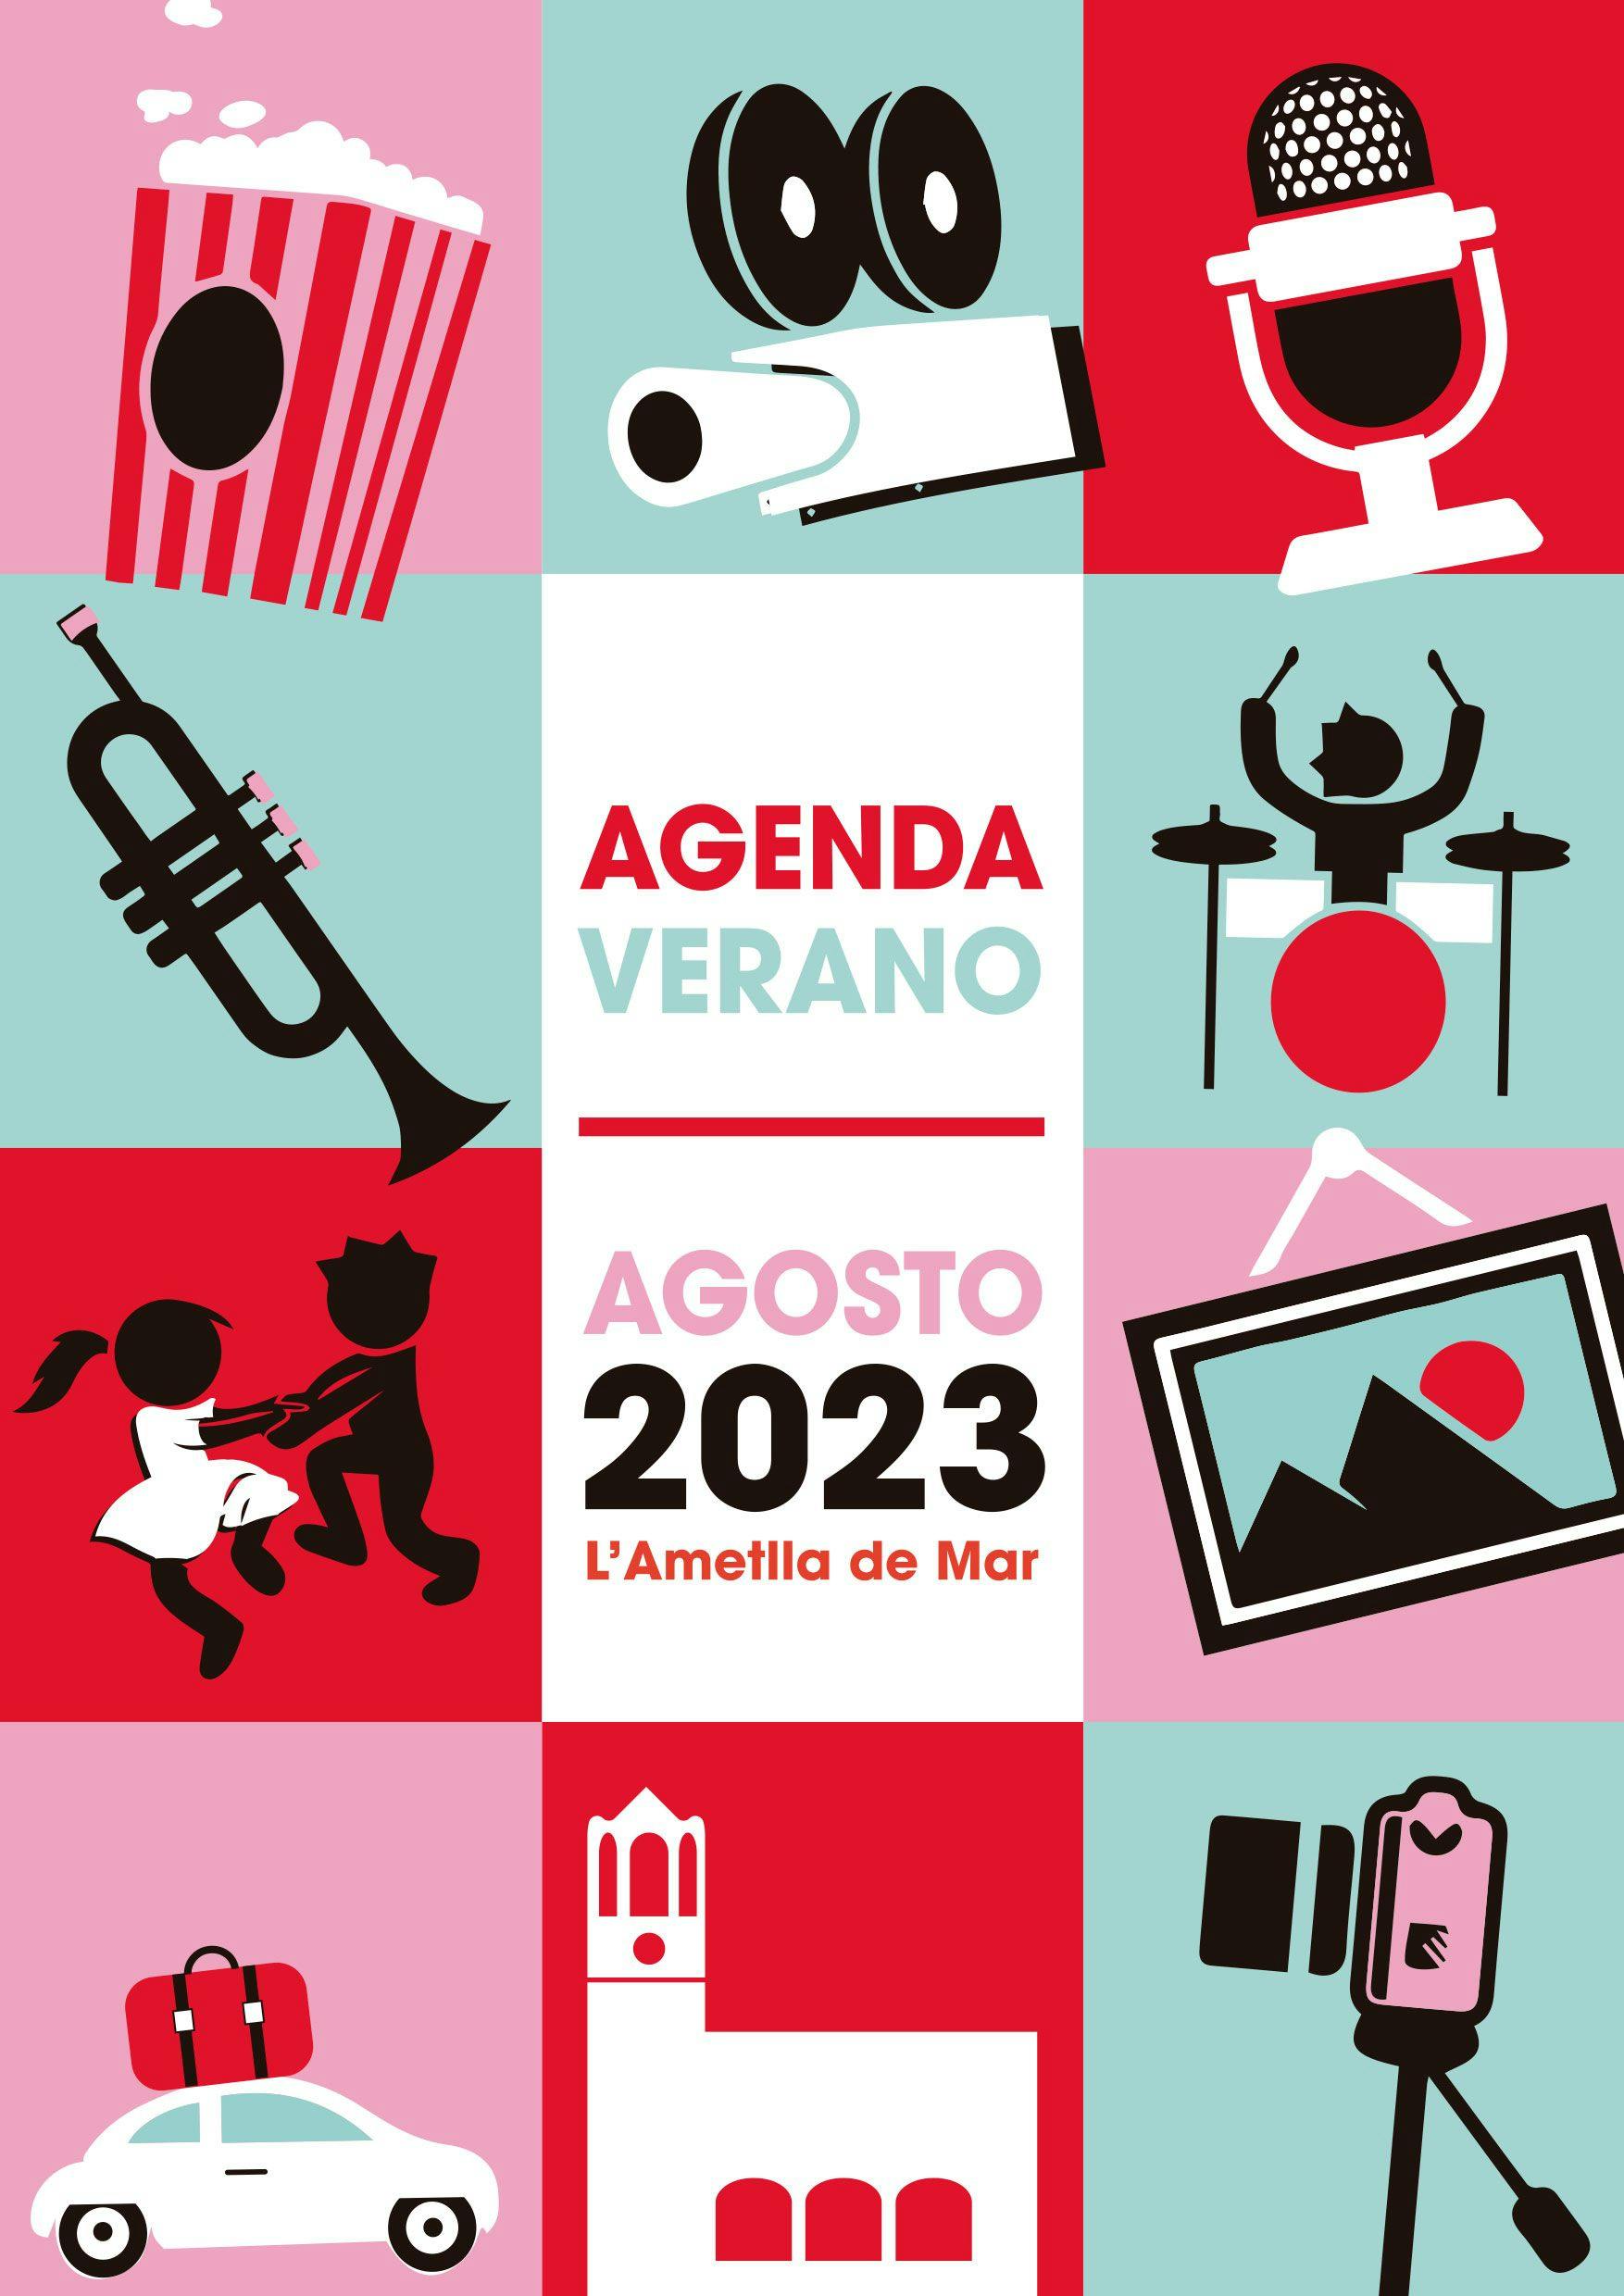 Agenda Verano - Agosto 2023